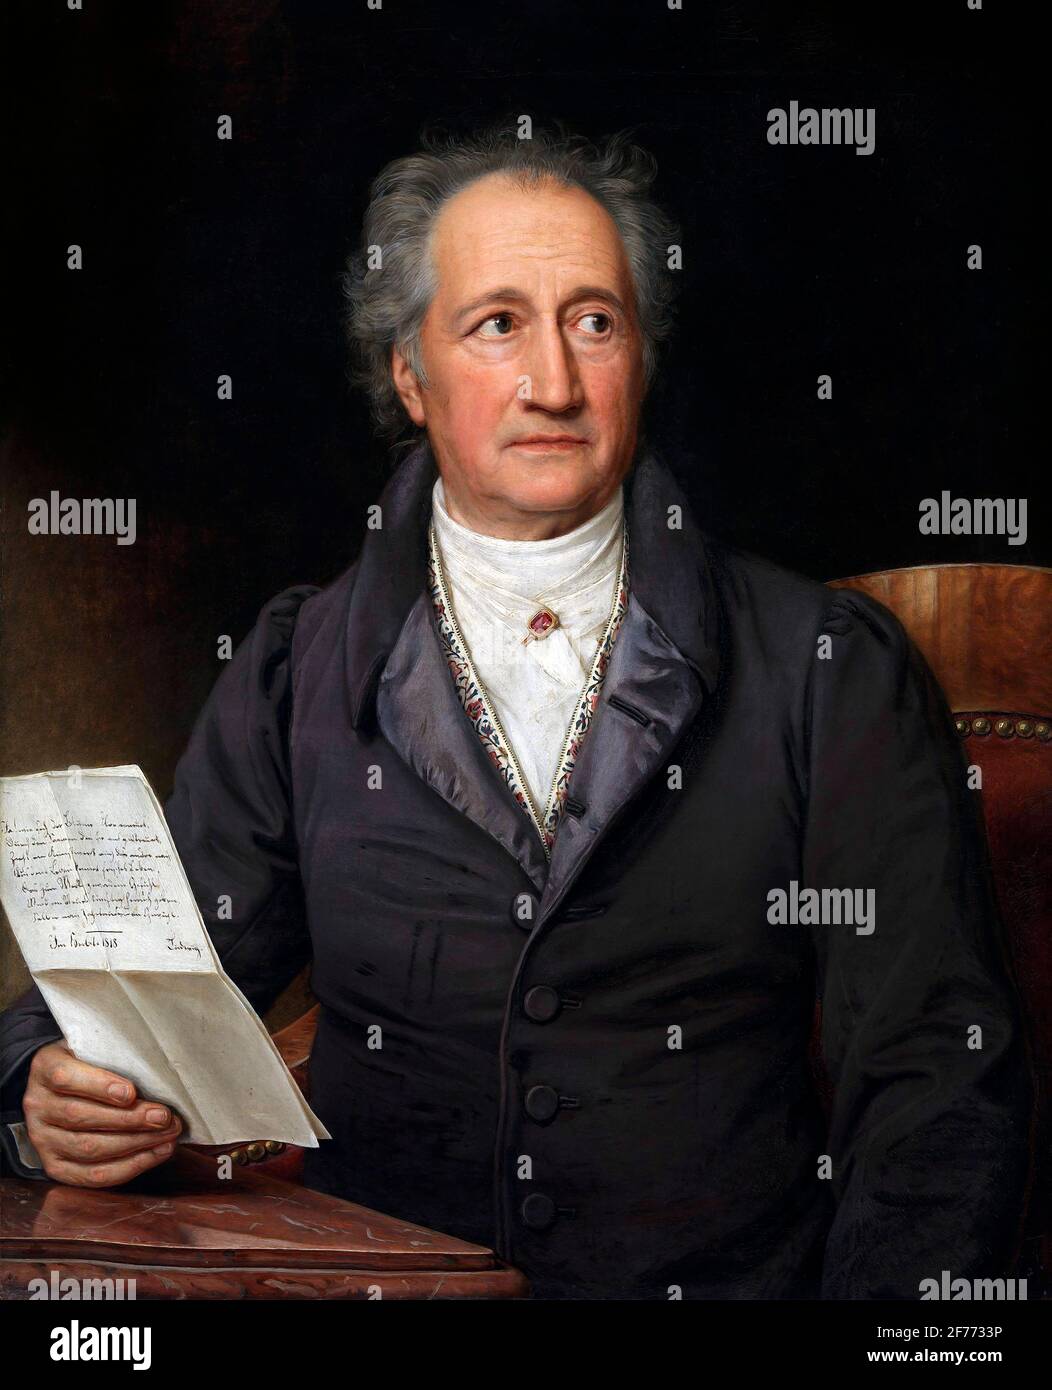 Goethe. Porträt des deutschen Schriftstellers Johann Wolfgang von Goethe (1749-1832) von Joseph Karl Stieler, Öl auf Leinwand, 1828. Stockfoto